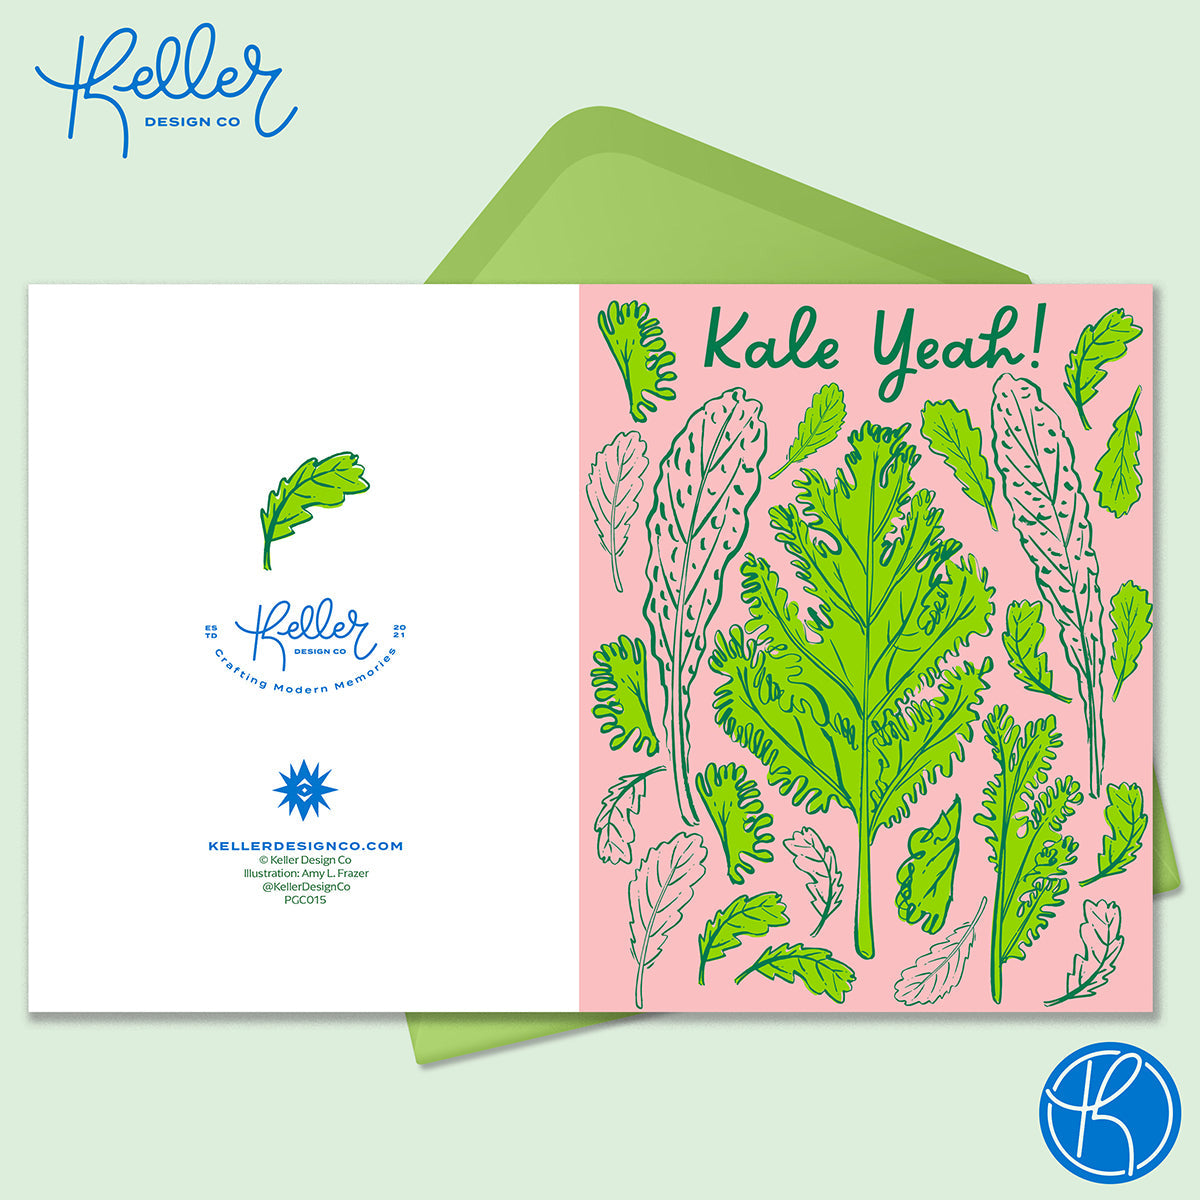 Kale Yeah! Greeting Card-Wholesale